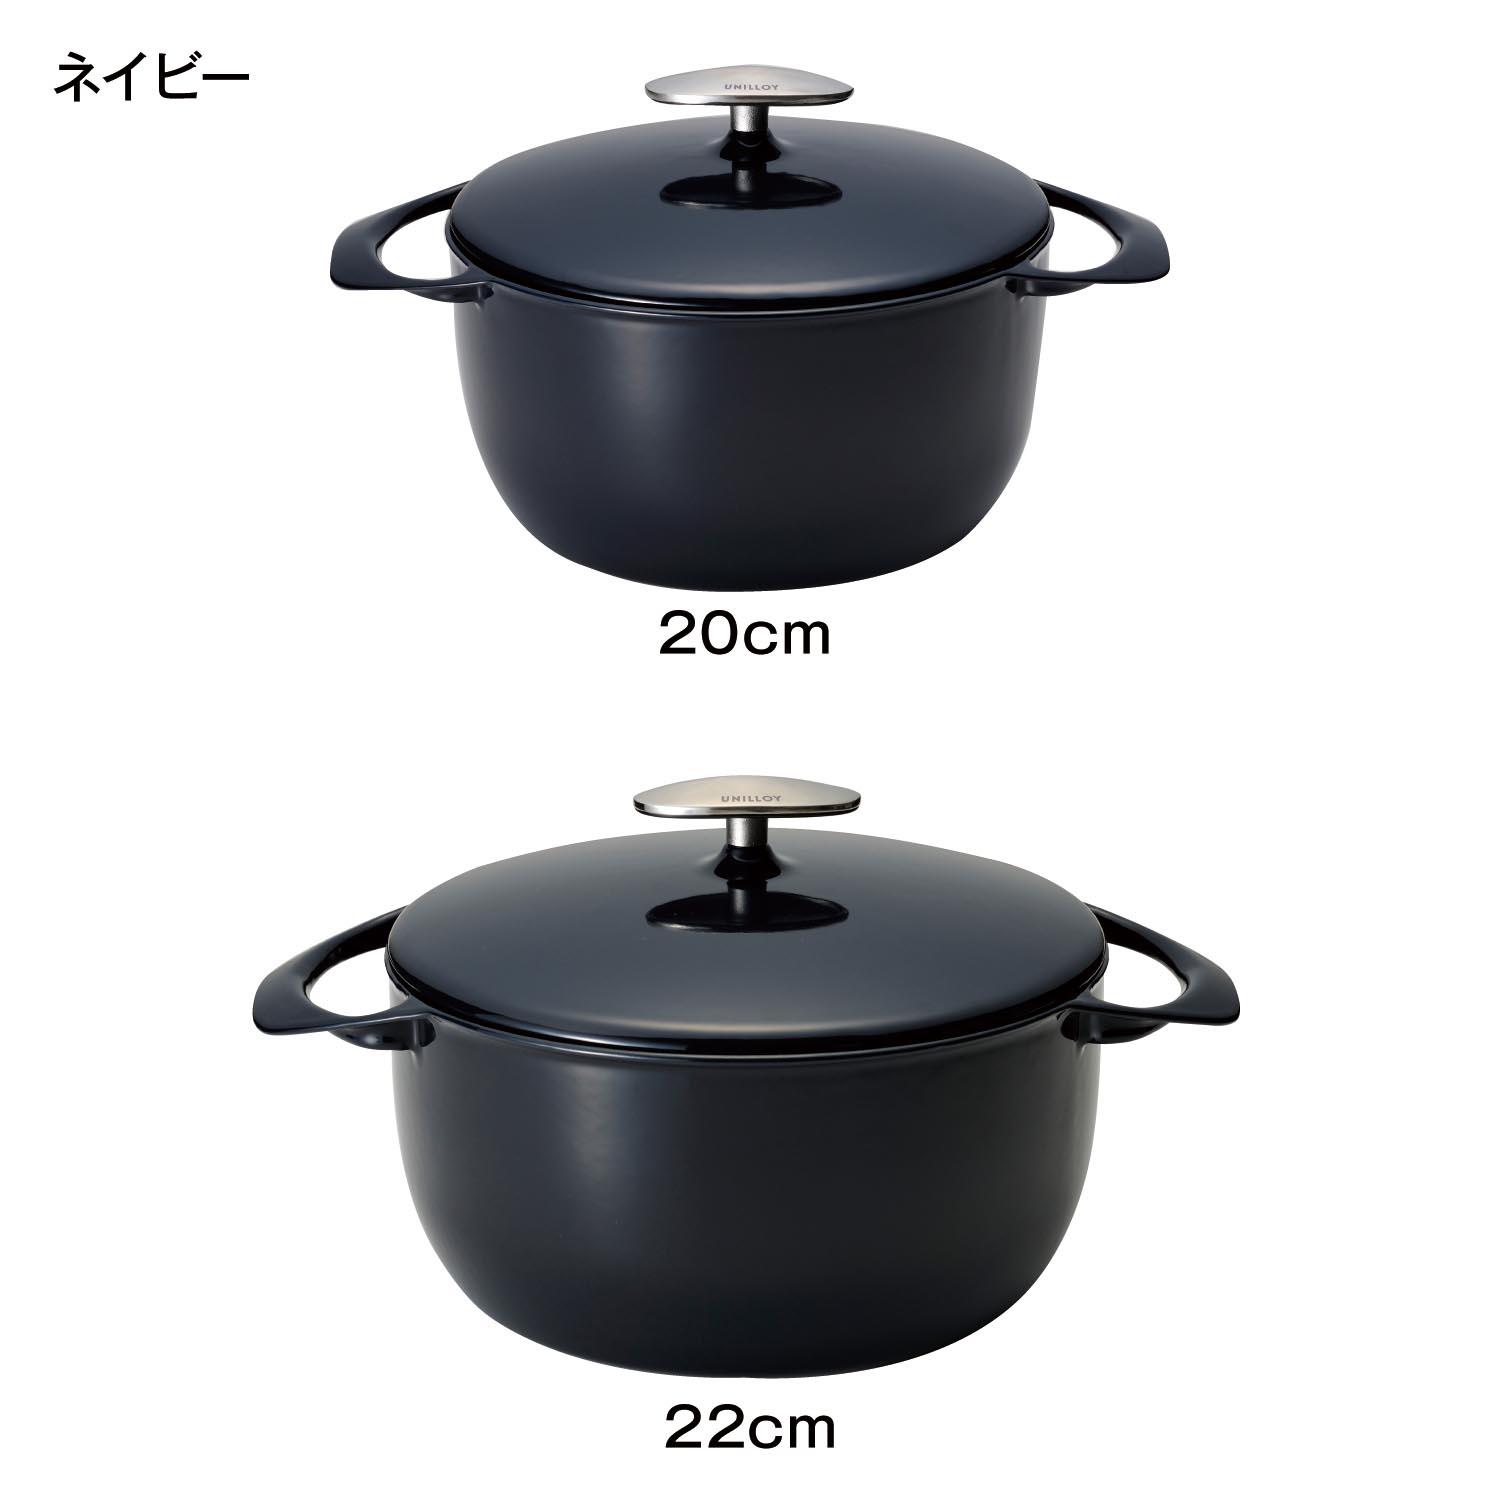 ホーロー鍋 鋳物鍋 鍋 超軽量 薄い IH 直火 オーブン可 日本製